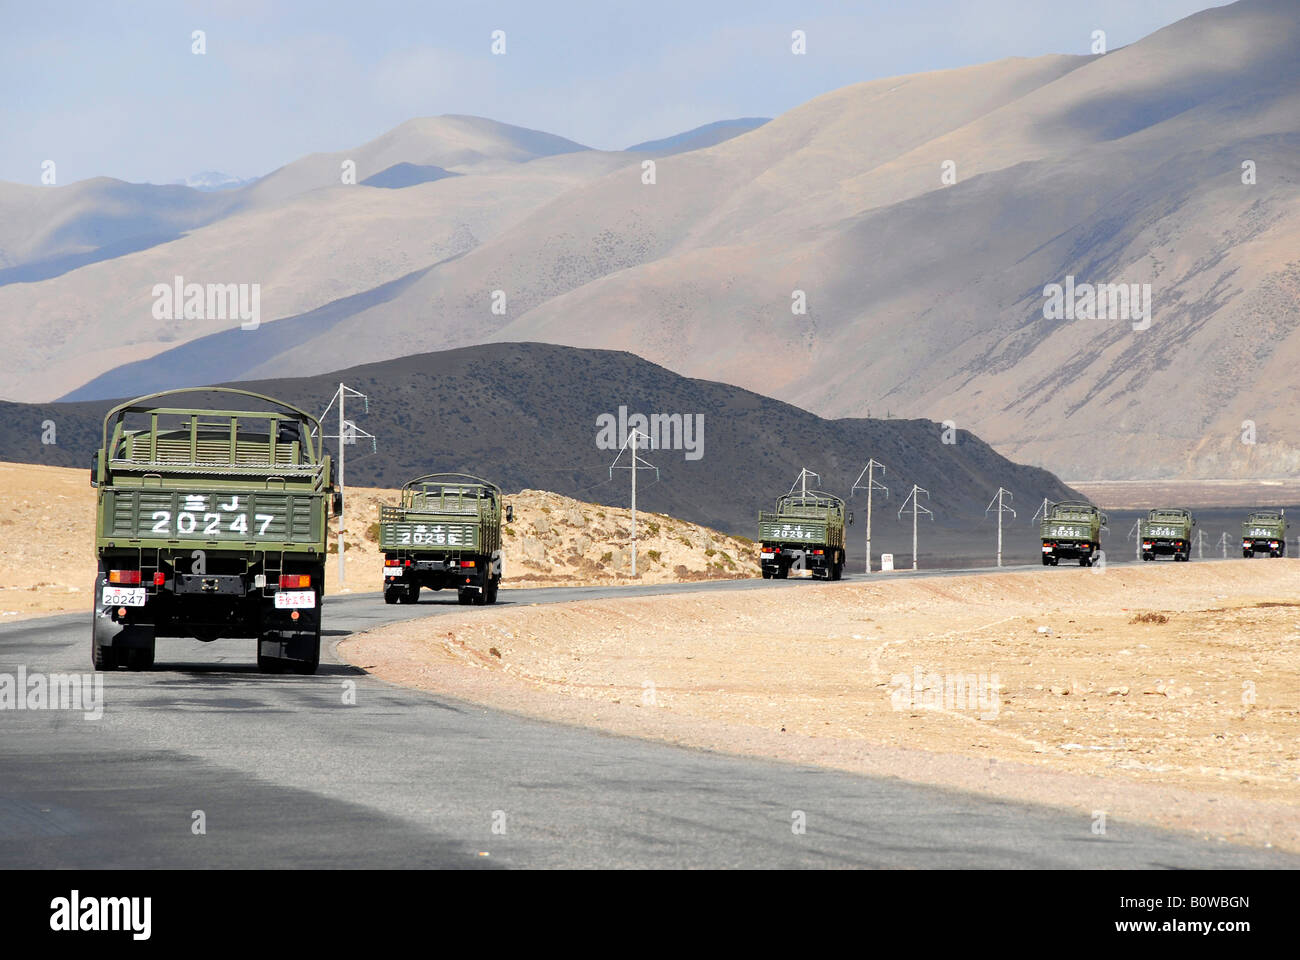 La conduite d'un convoi de camions militaires chinois sur une route pavée au Tibet, en Asie Banque D'Images